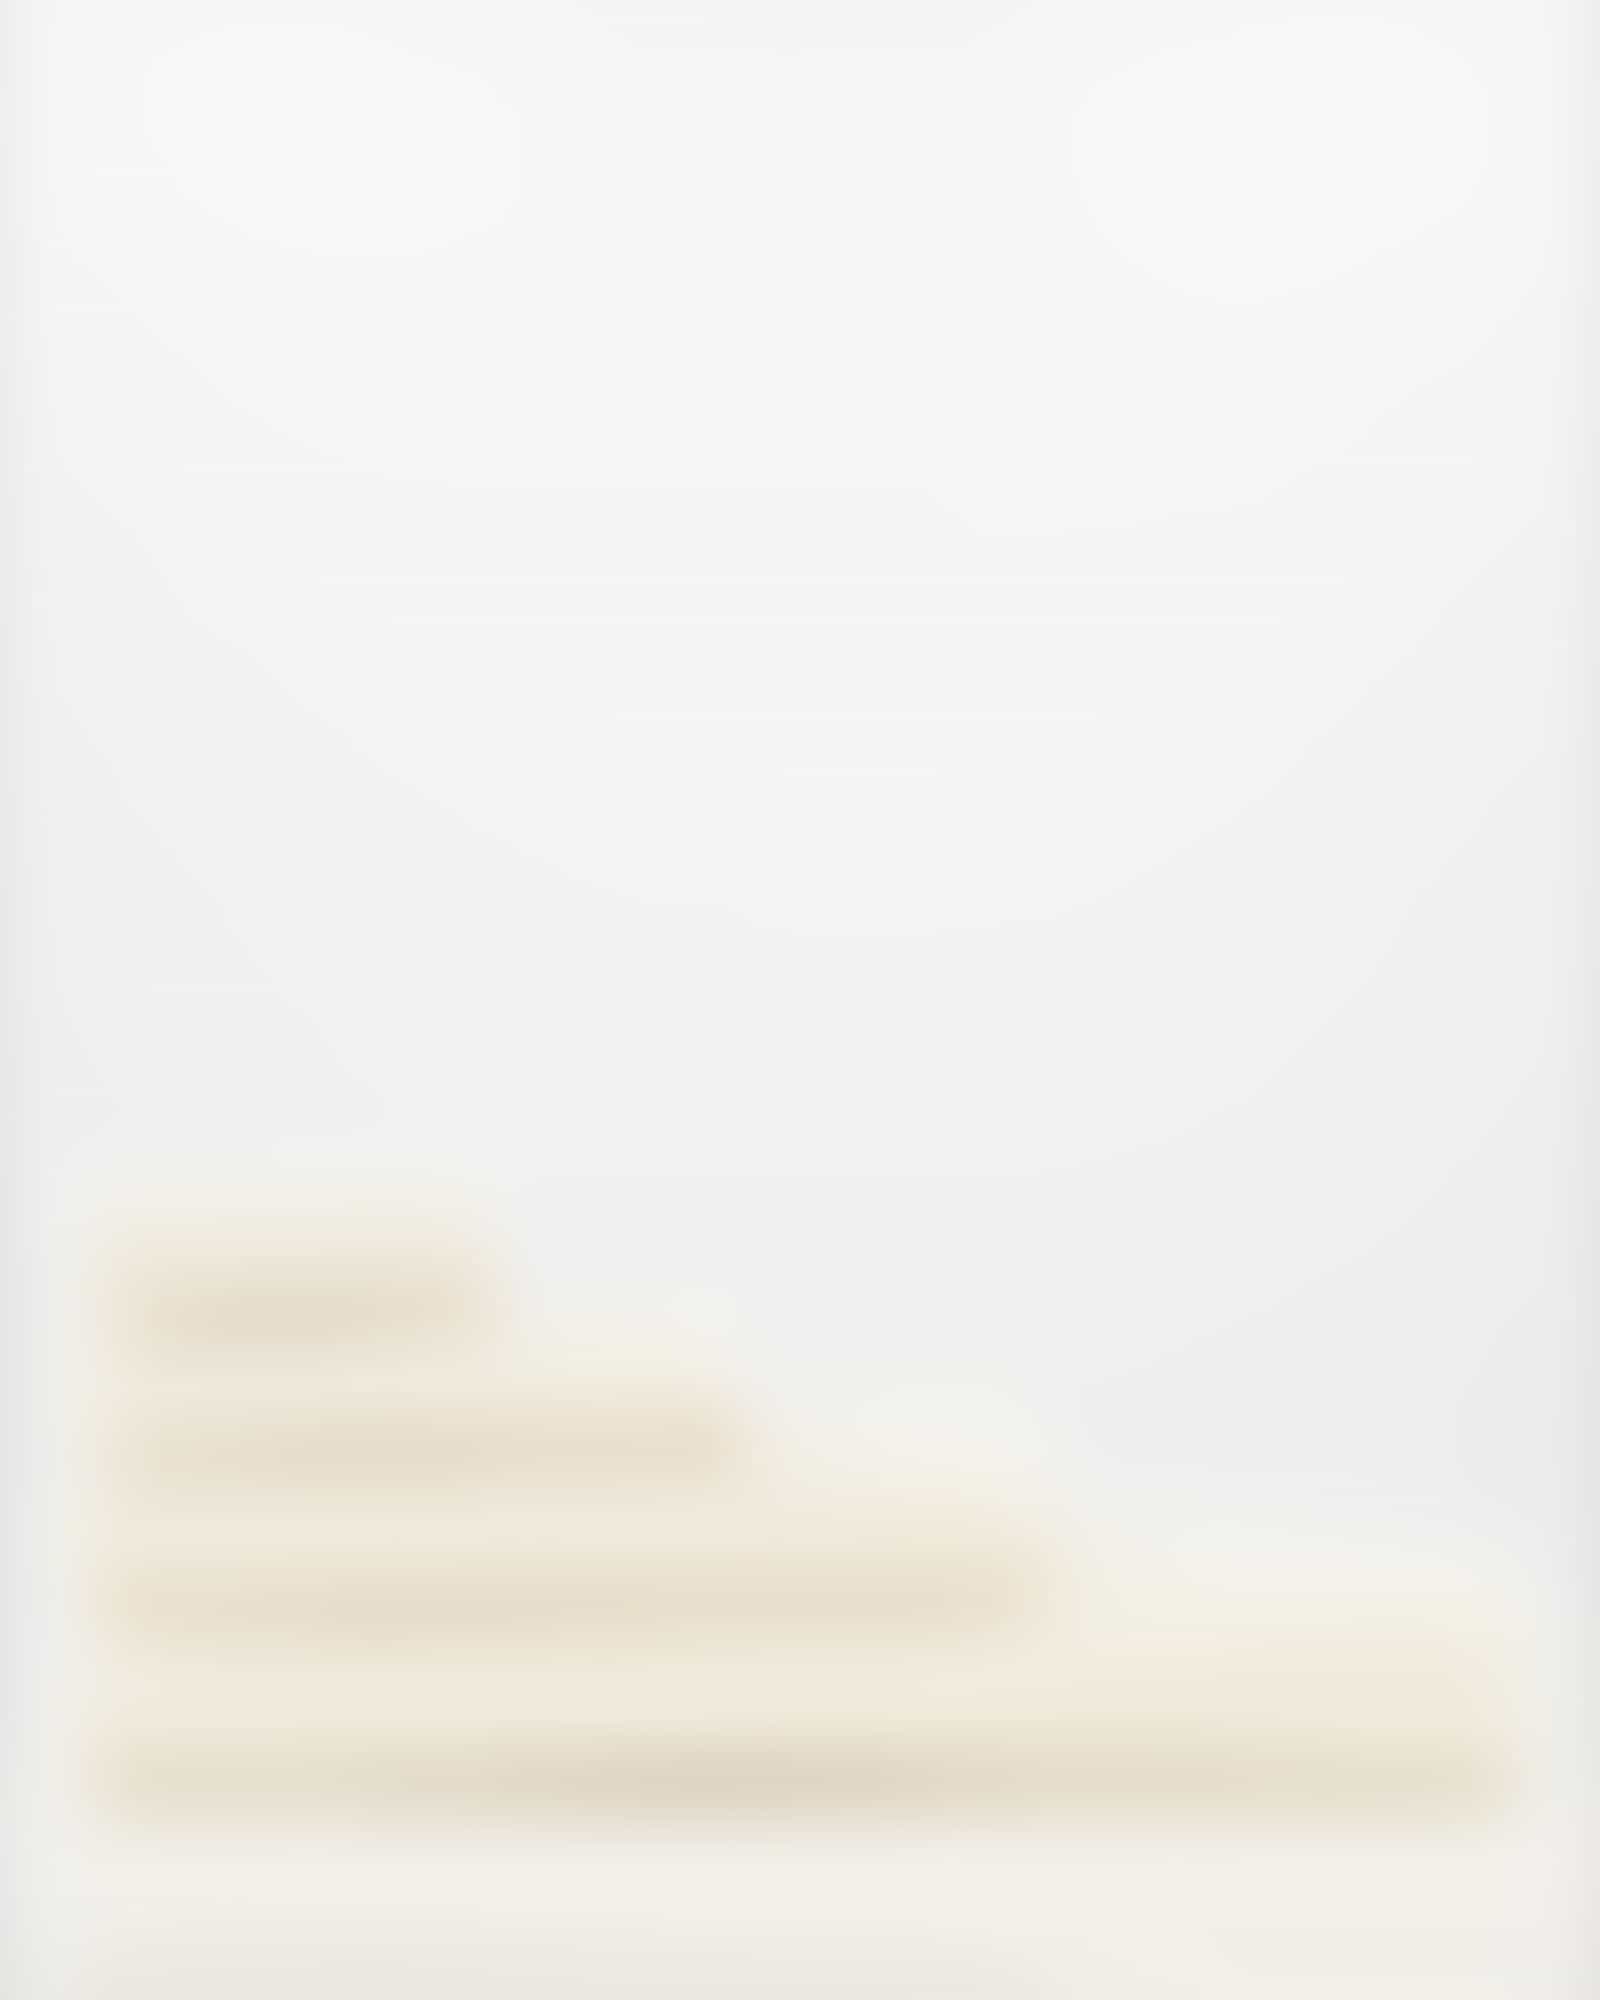 JOOP Uni Cornflower 1670 - Farbe: Creme - 356 - Duschtuch 80x150 cm